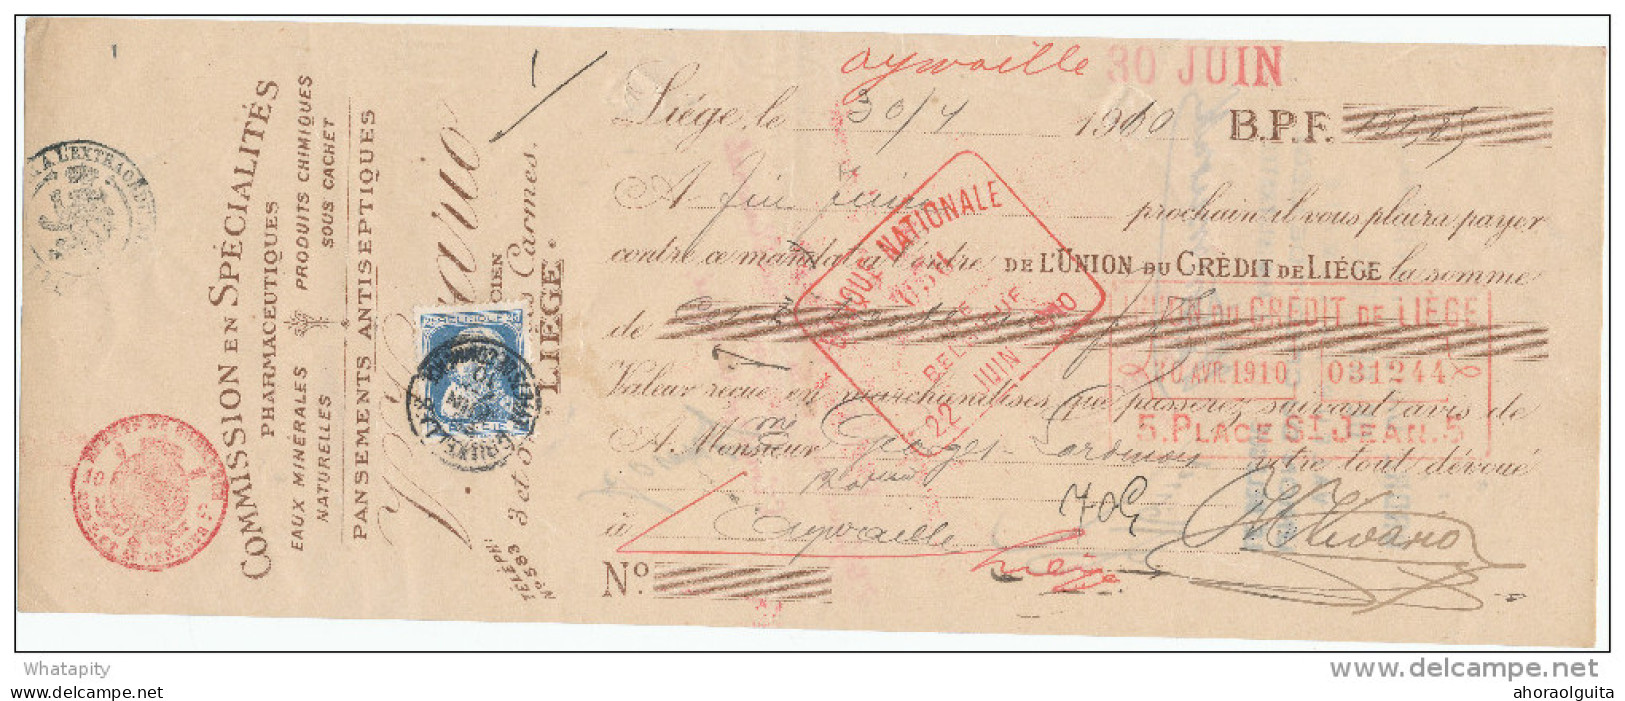 BELGIQUE - Document Financier Via Poste Belge 1910 - Spécialités En Pharmacie Vivario à LIEGE  -- VV429 - Pharmacy